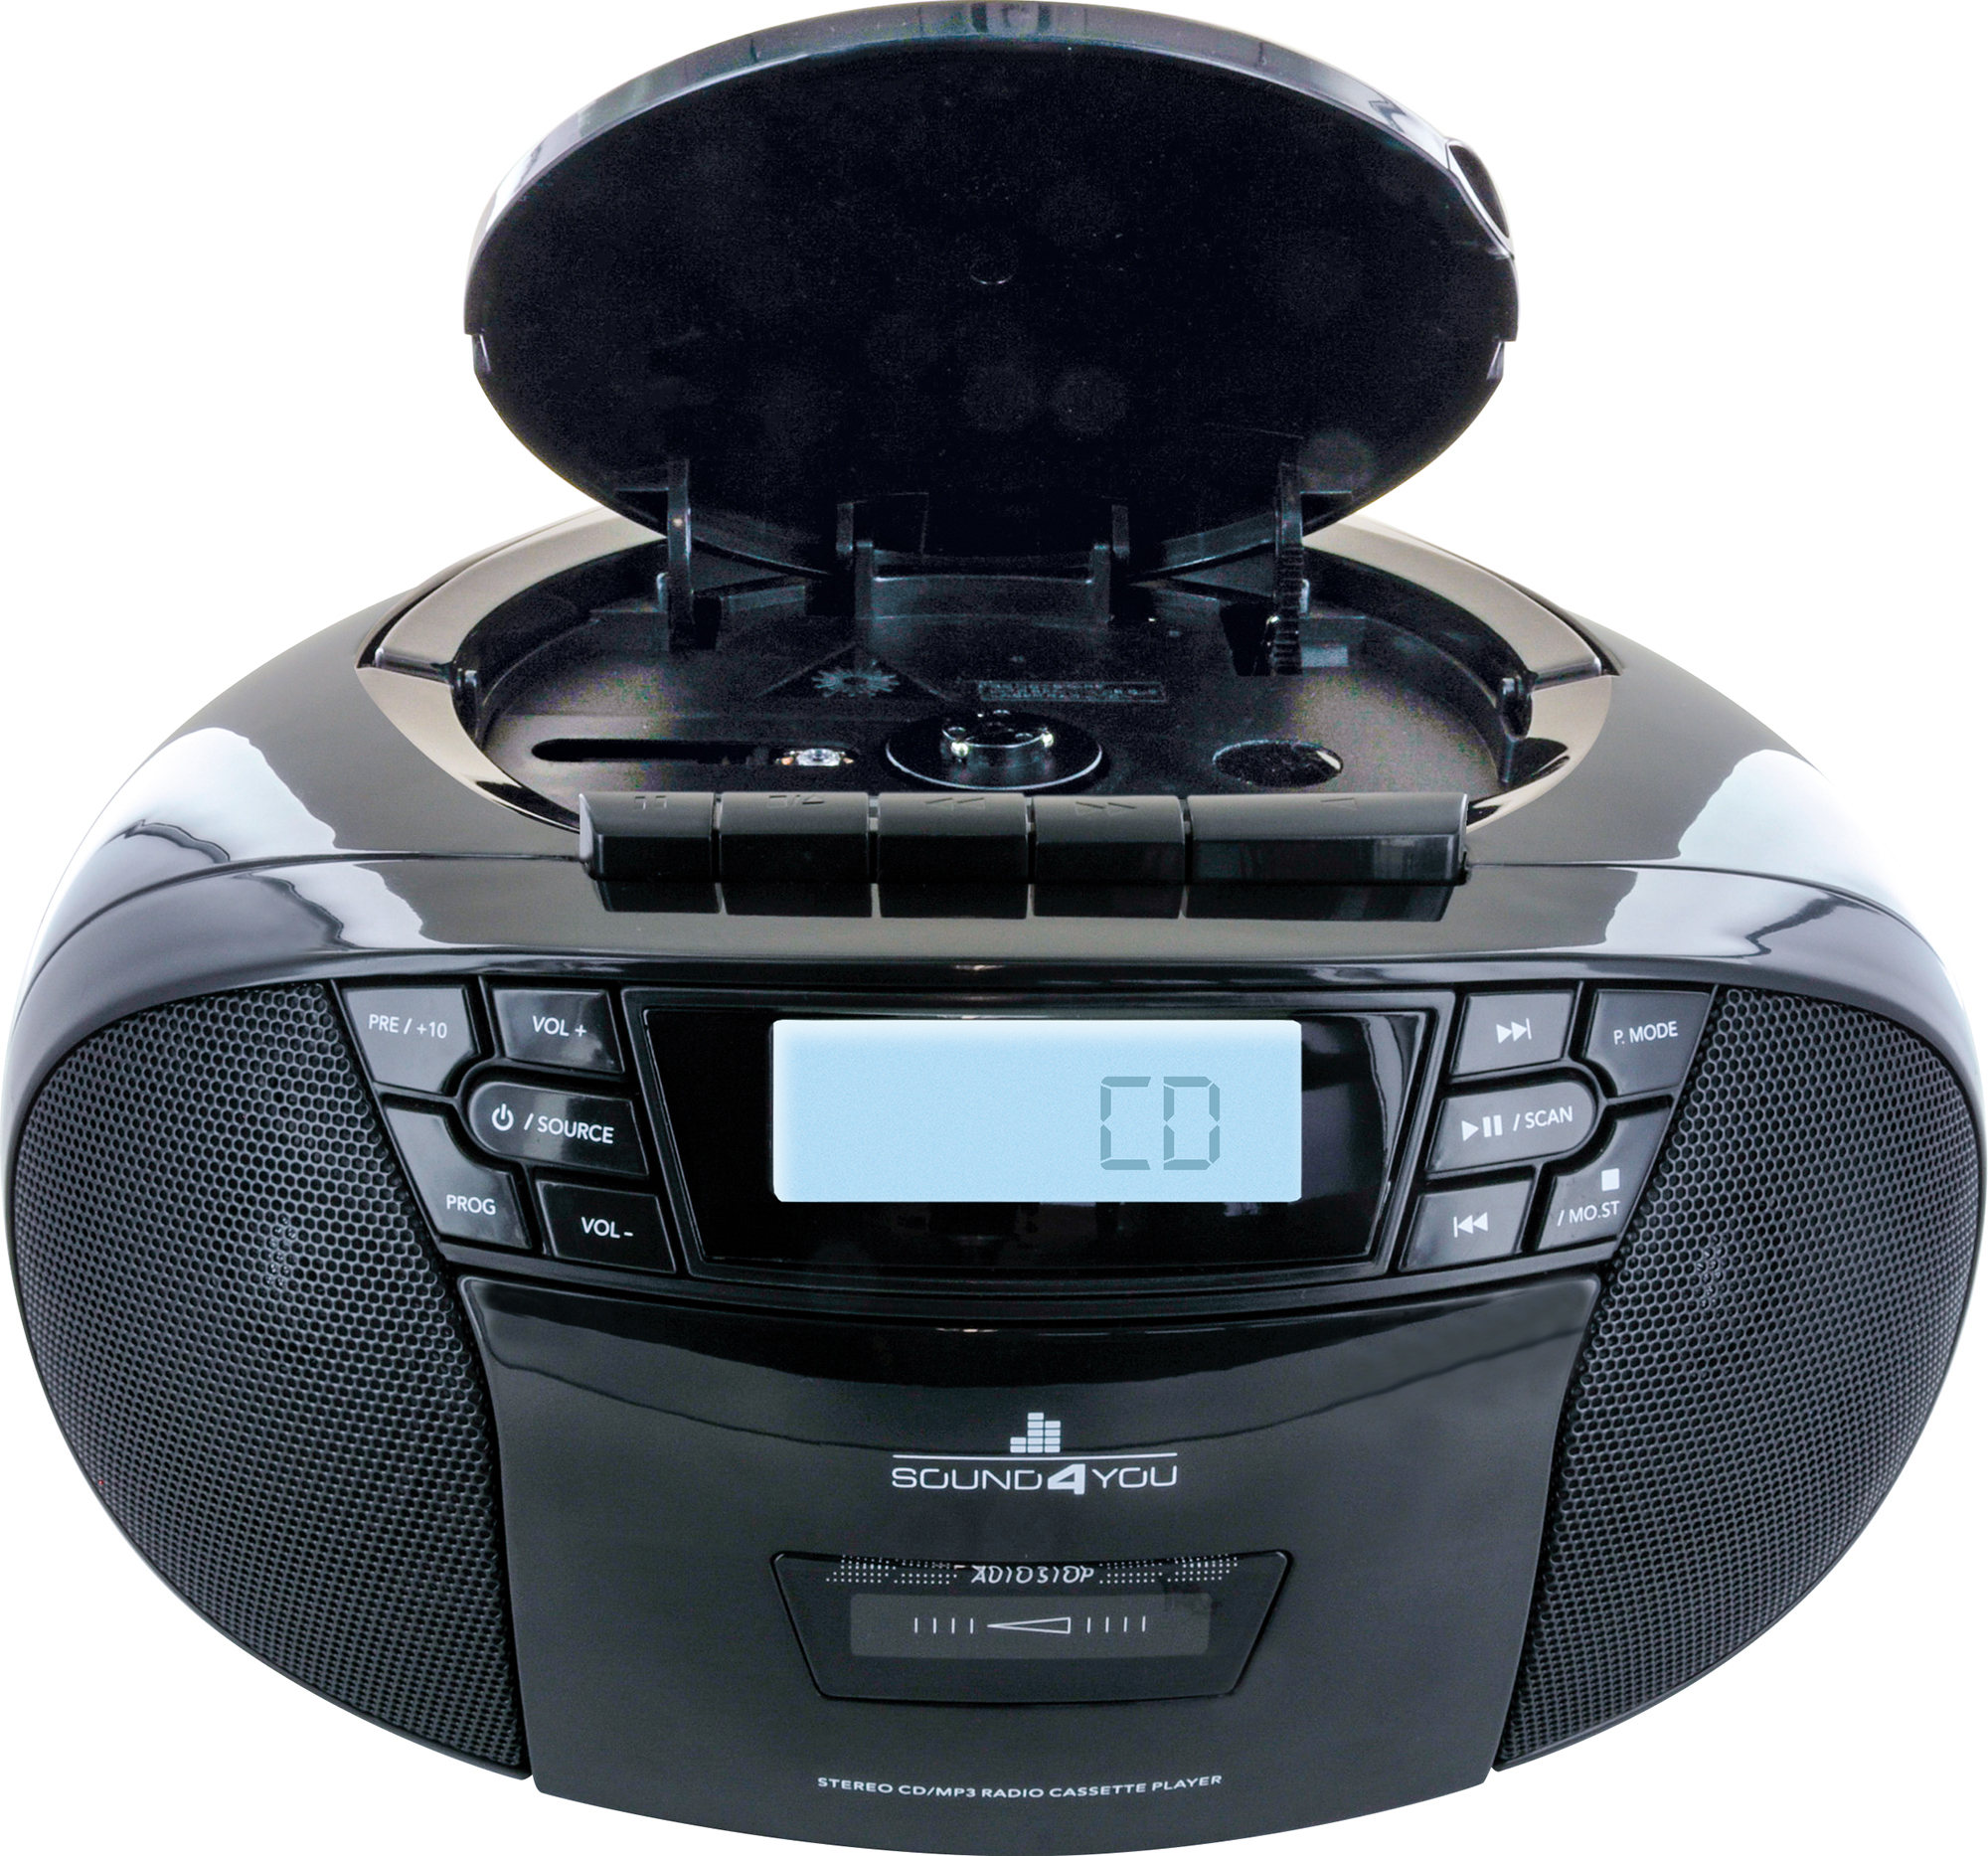 Tragbarer Schwarz CD-Player, -658026- SCHWAIGER